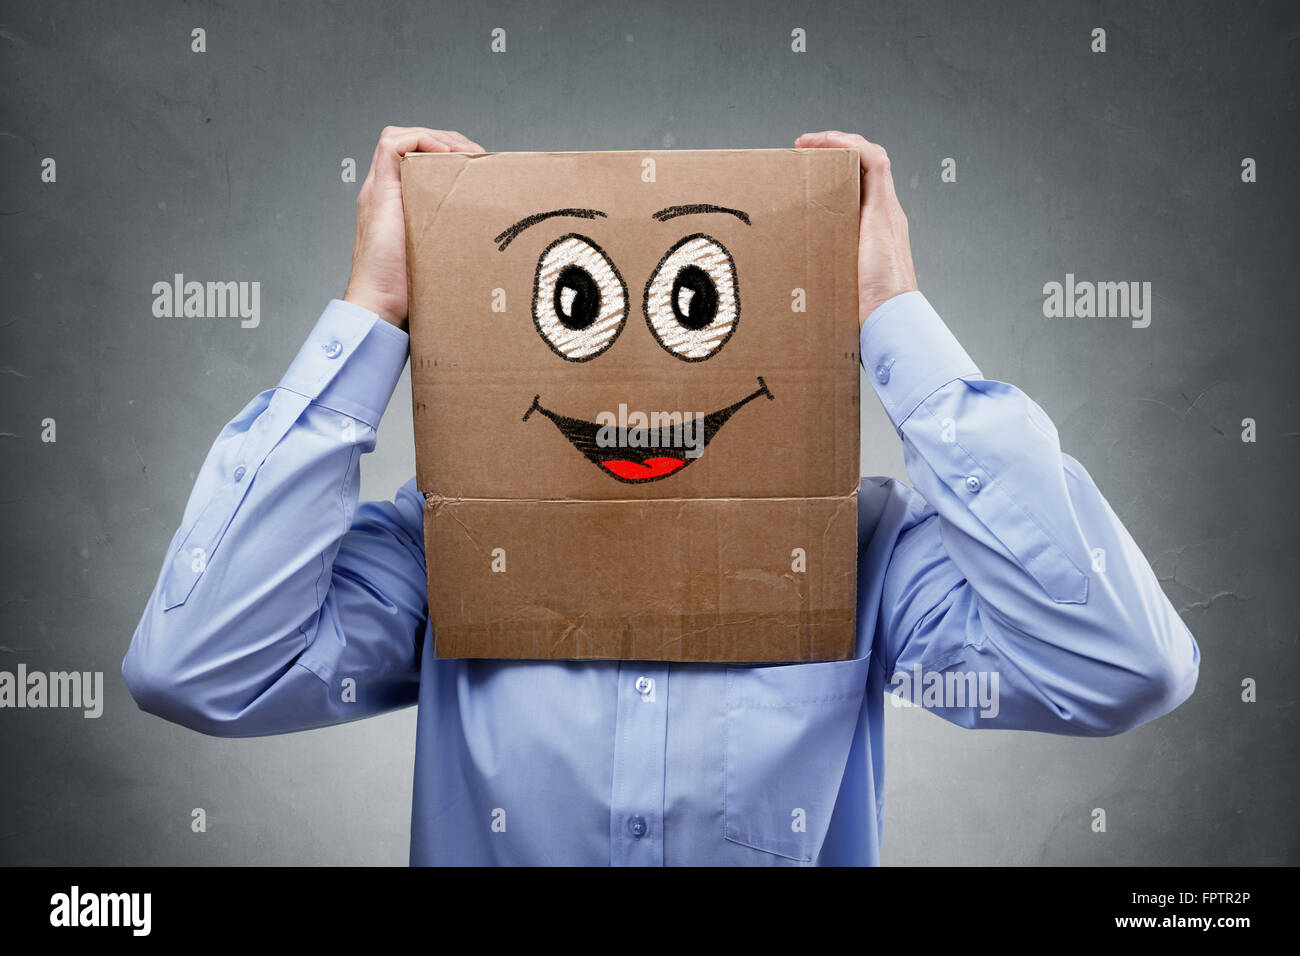 Geschäftsmann mit Karton auf den Kopf mit lächelnden Ausdruck Konzept für Glück, Aufregung, Begeisterung oder Erfolg Stockfoto